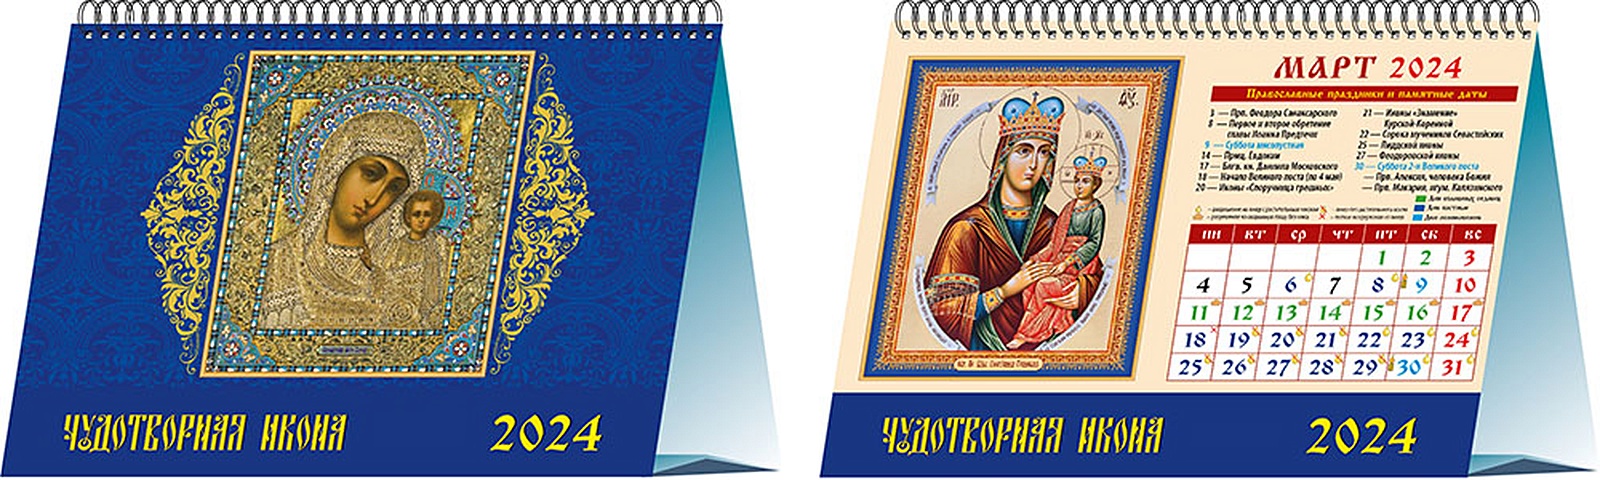 Календарь 2024г 200*140 Чудотворная икона настольный, домик календарь 2015 чудотворная икона 45501